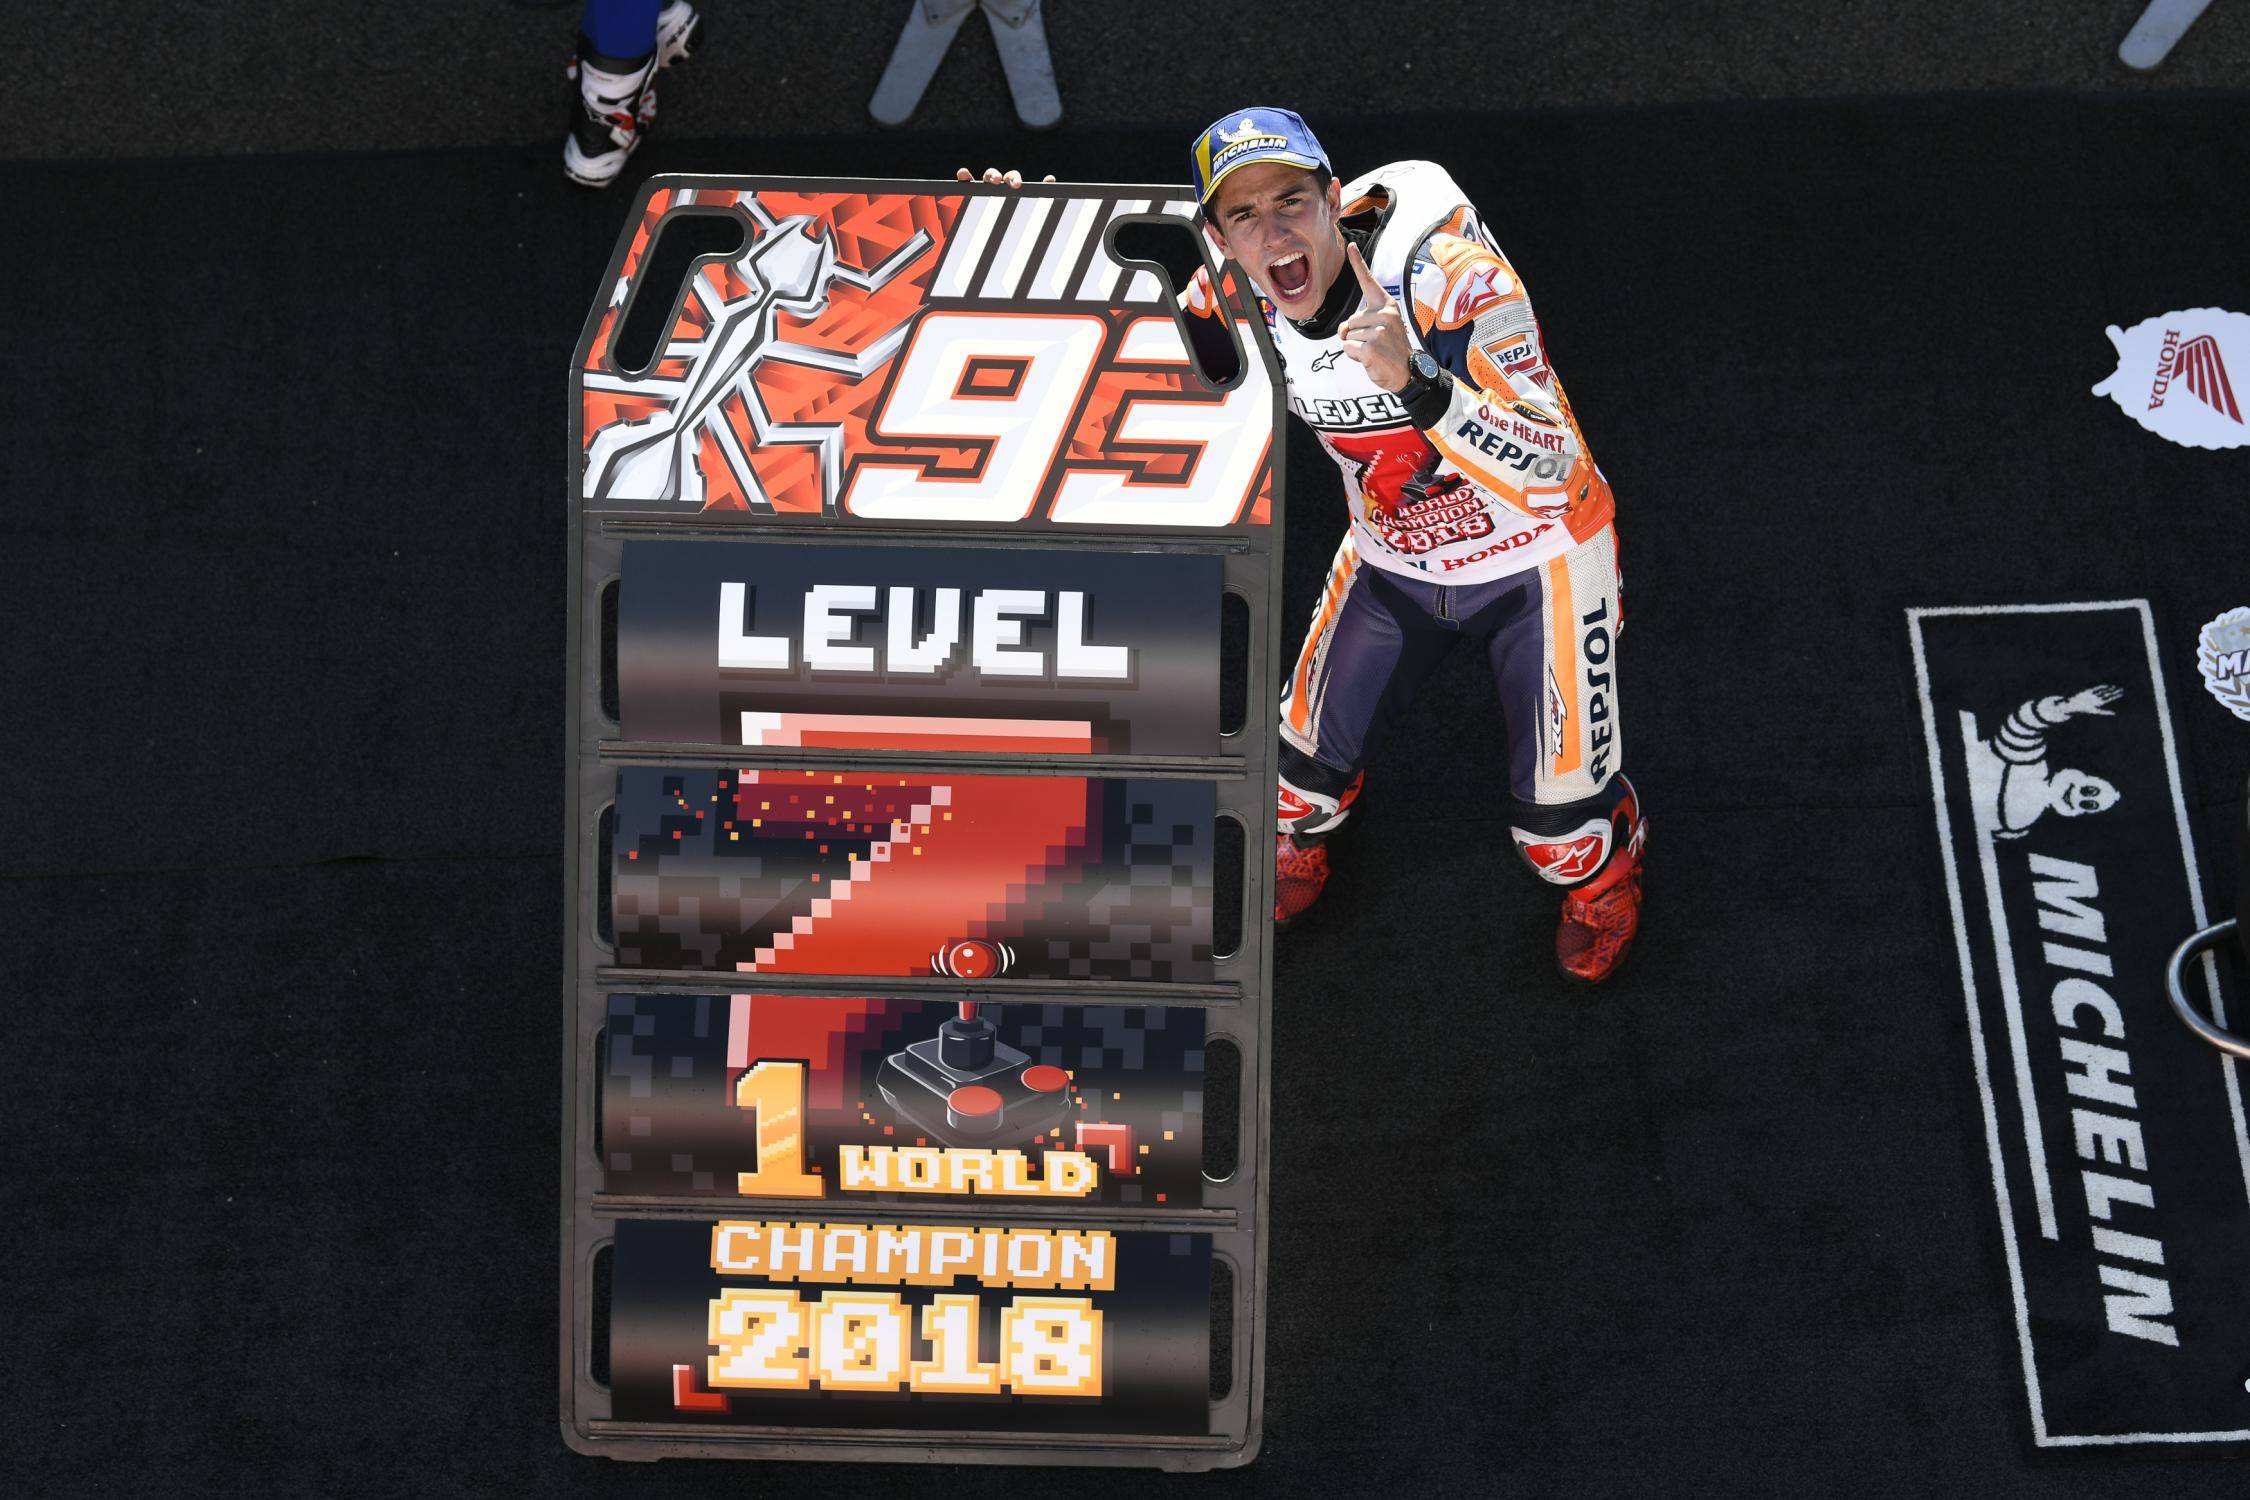 Marq Marquez segurando placa de campeão mundial 2018